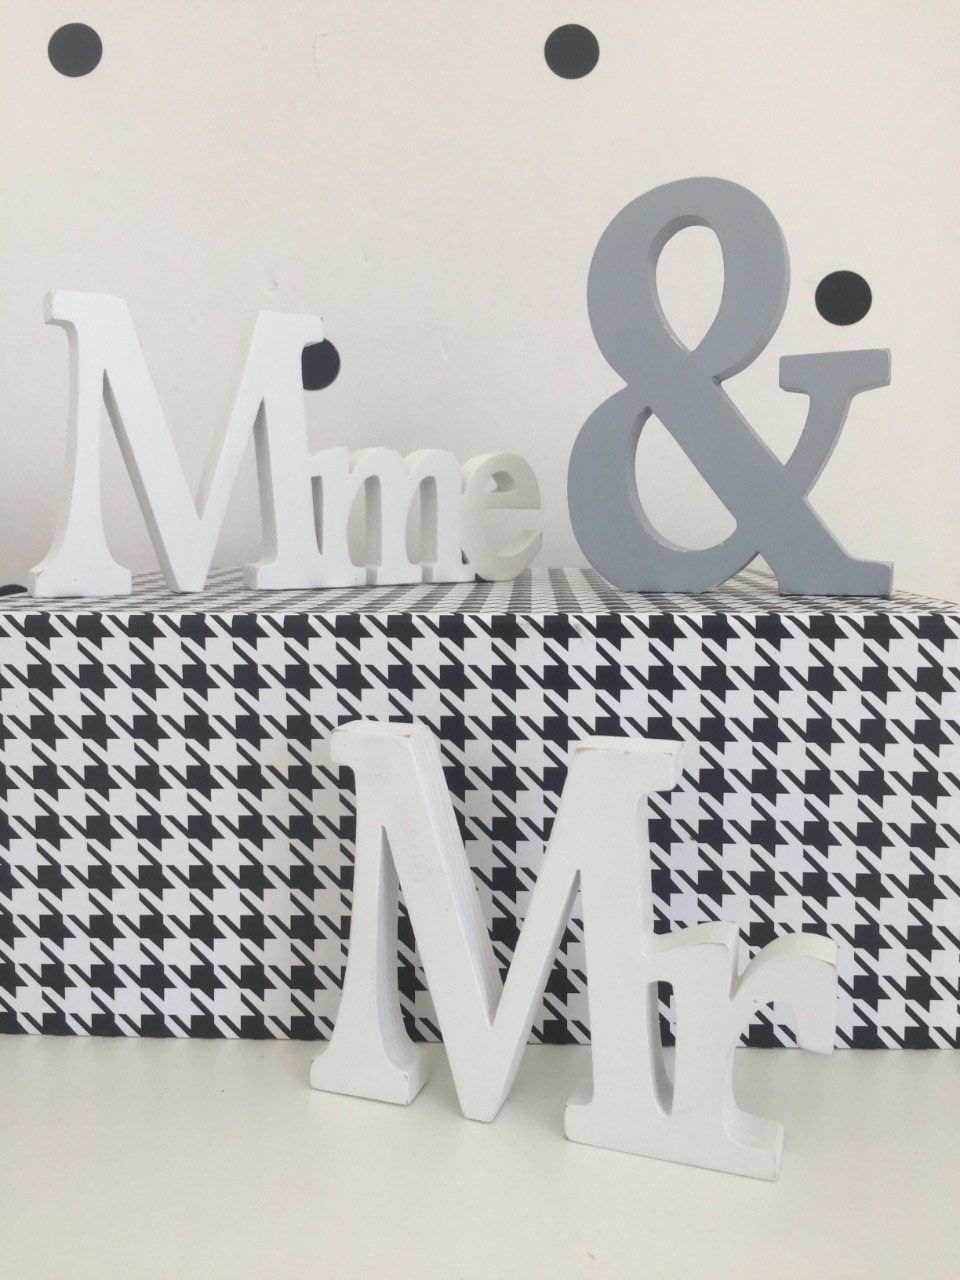 Mr & Mme avec esperluette en blanc et gris.